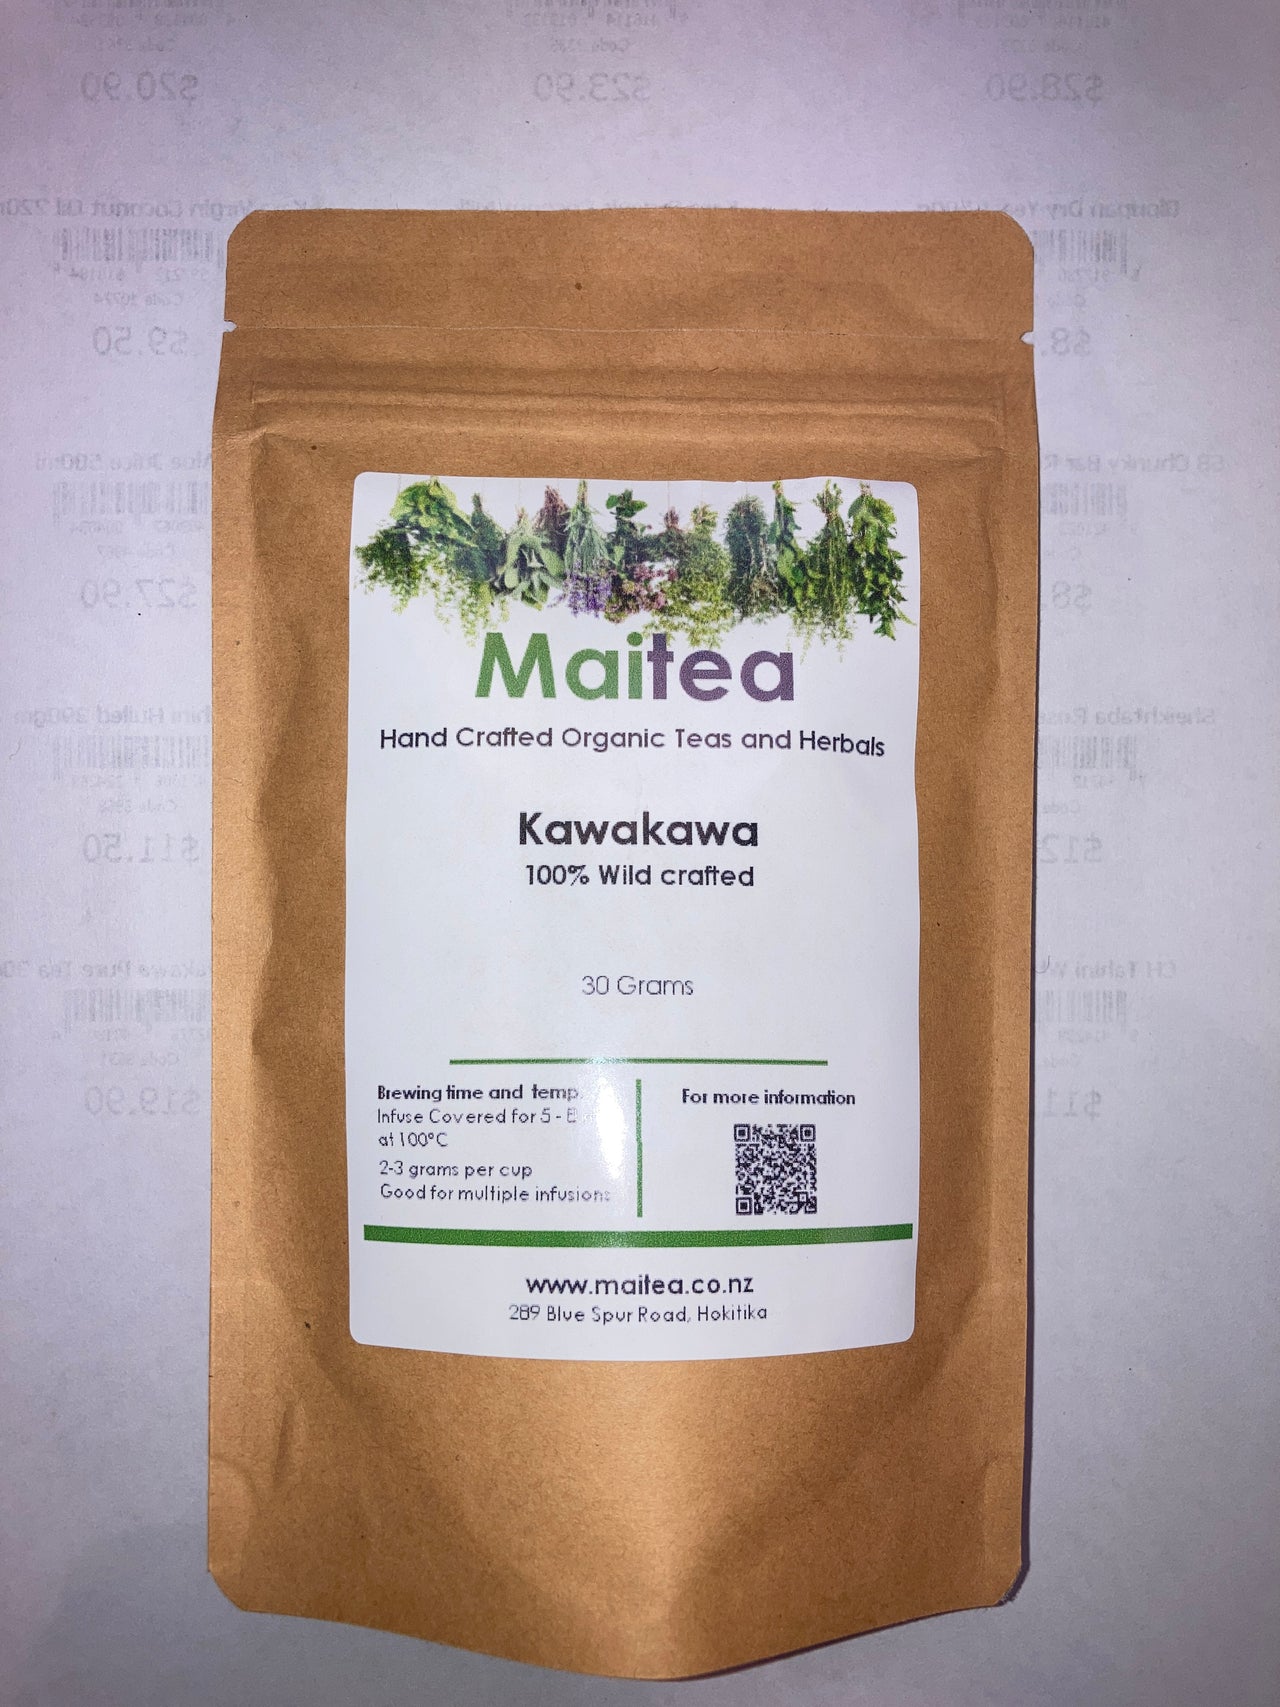 Maitea - Kawakawa Loose Leaf Tea - [30g]